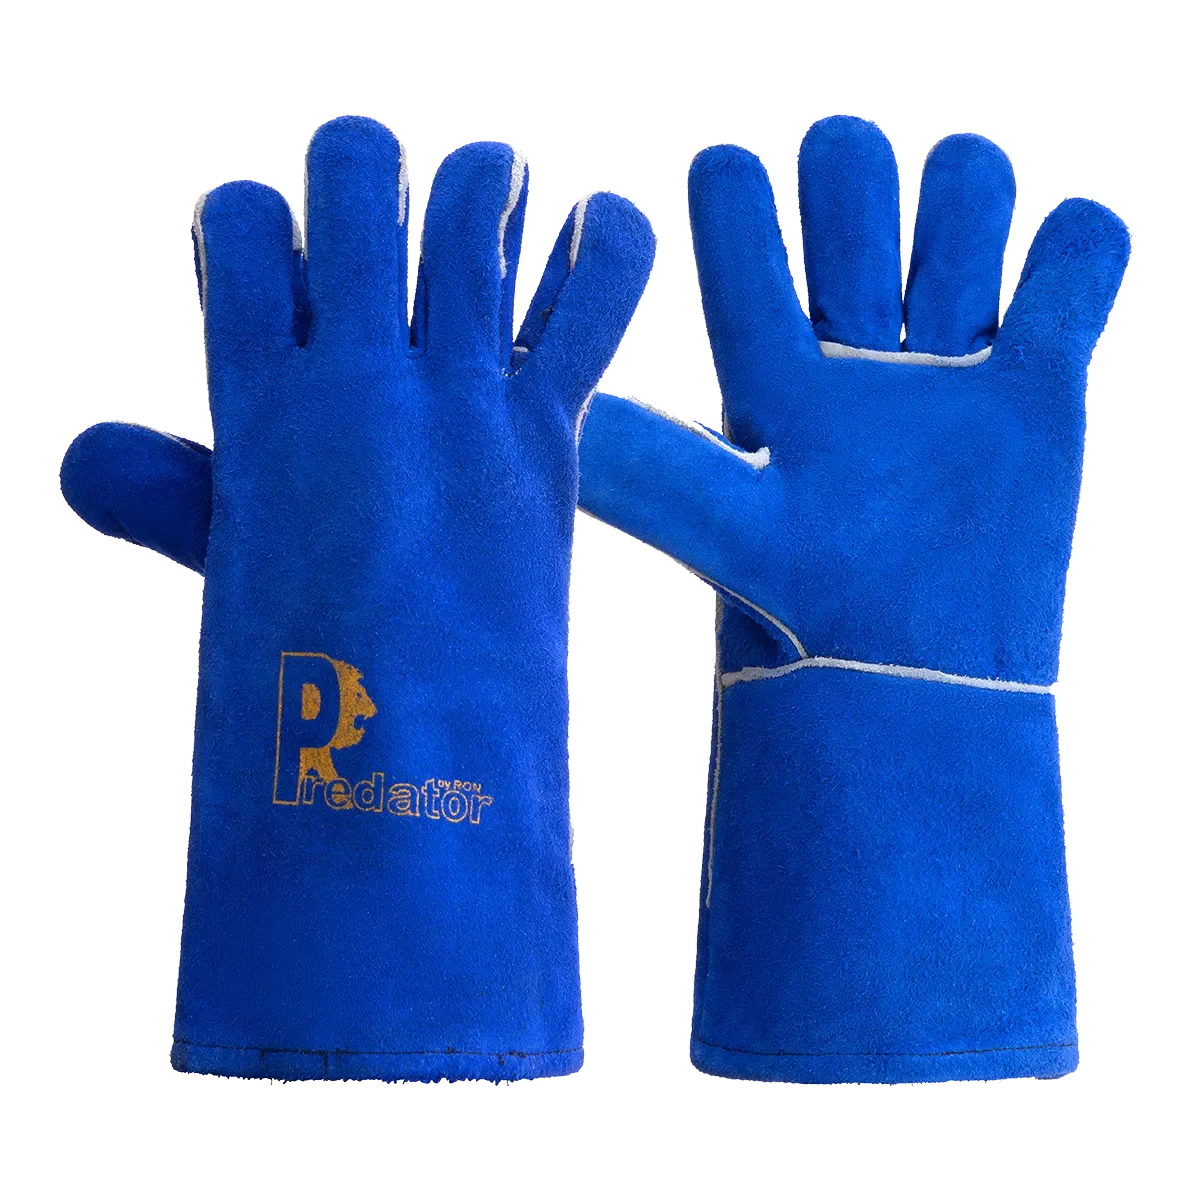 RSW1C-BLUE-S Pair Safety Gloves